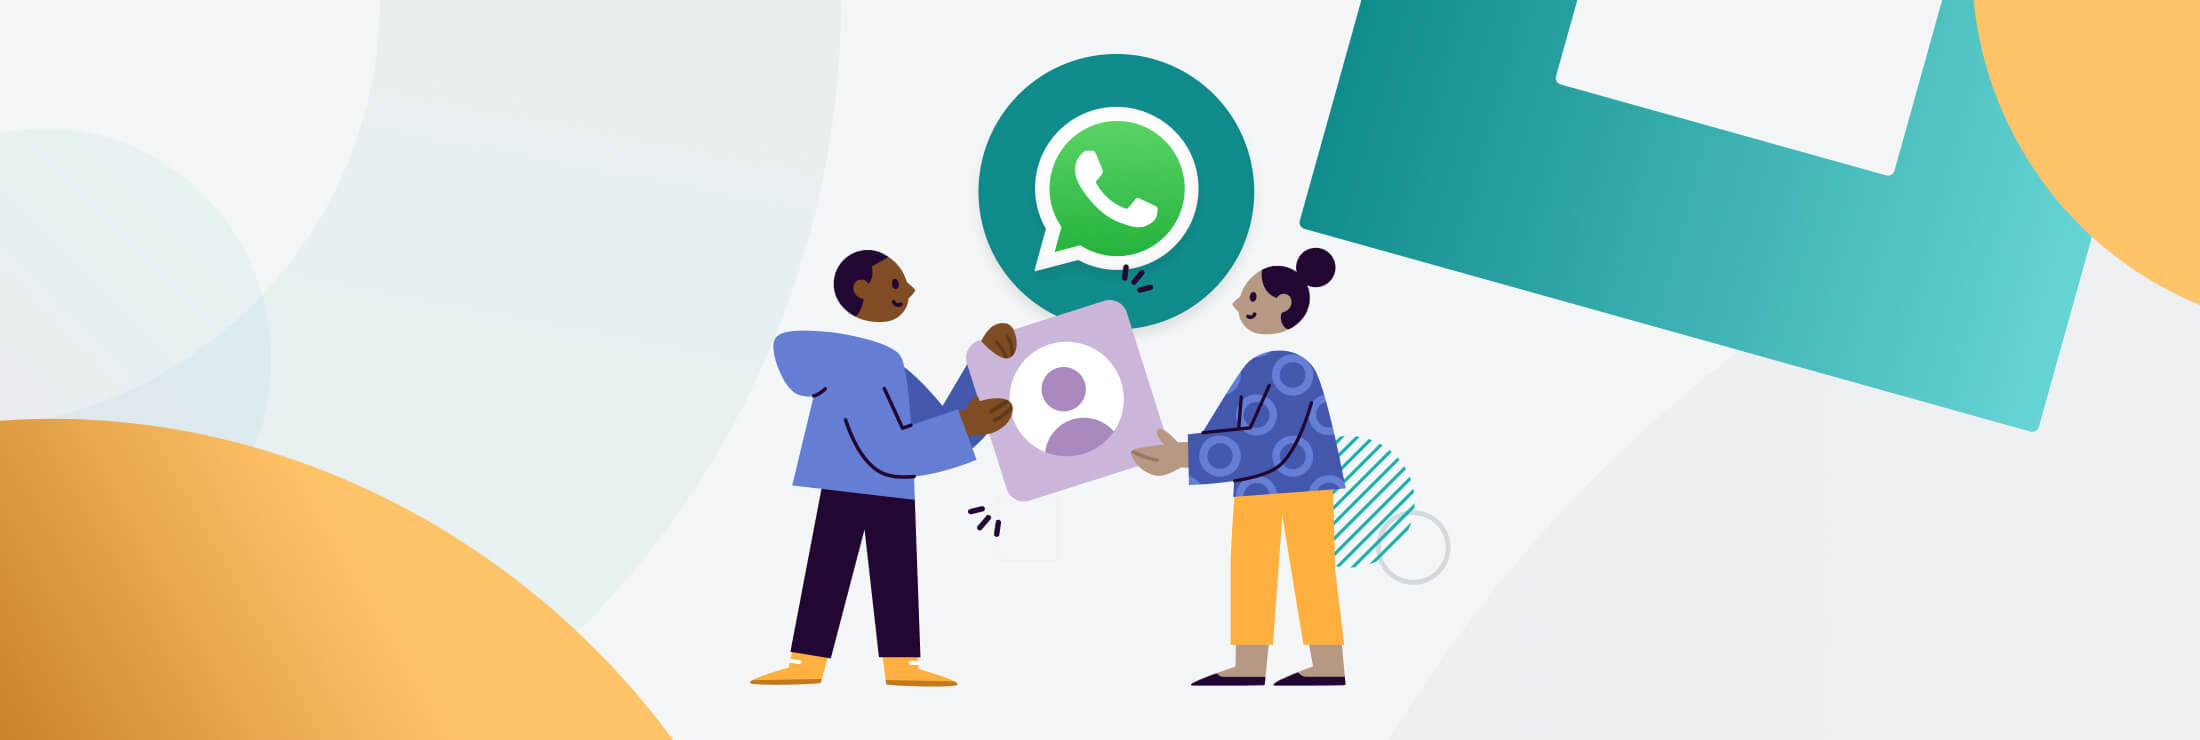 Ilustración sobre la experiencia del cliente con Whatsapp Business Platform